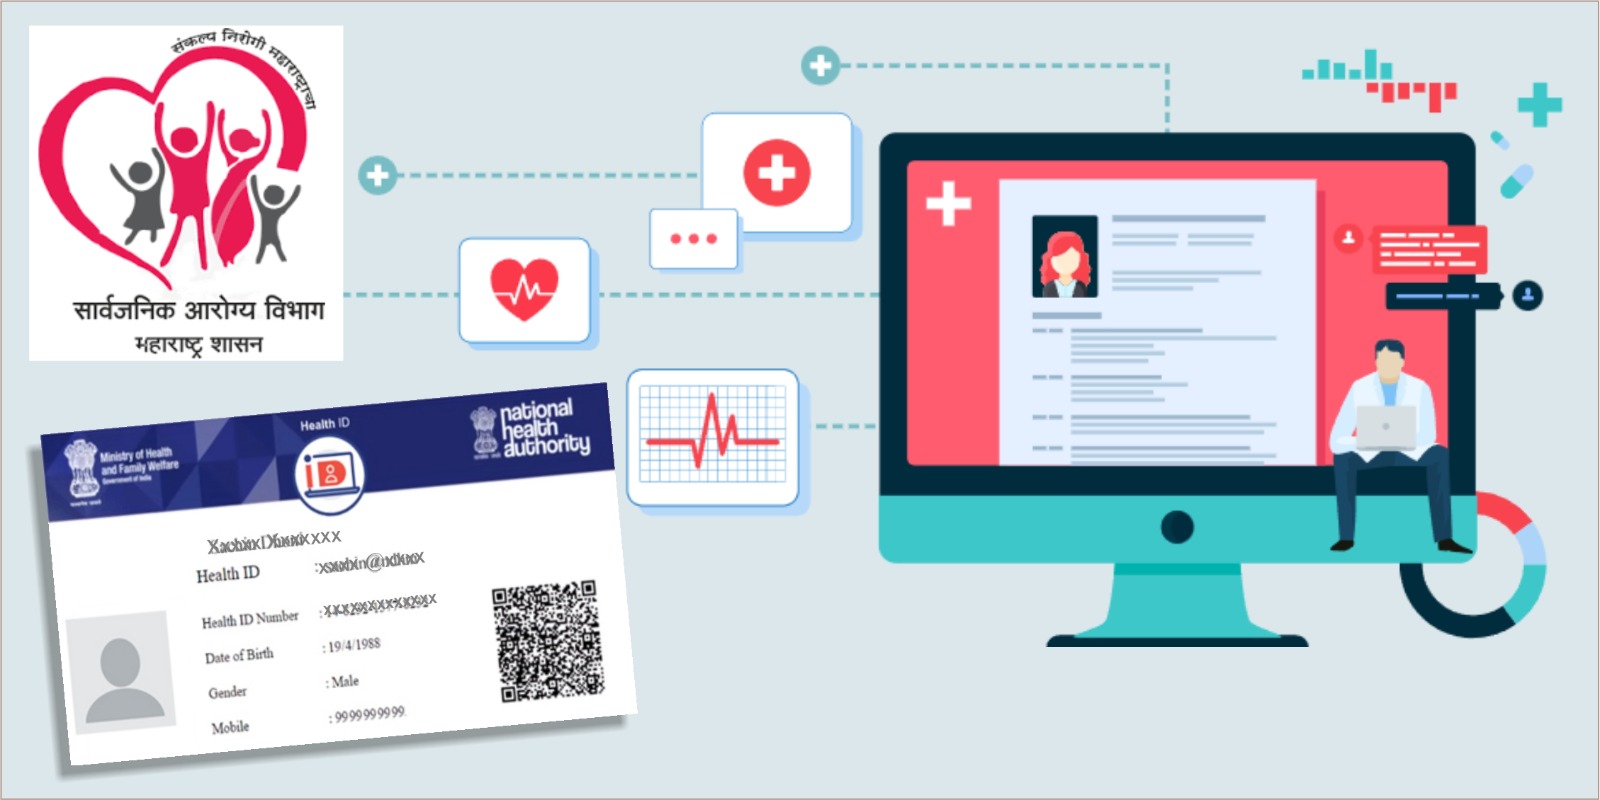 राज्यातील सर्व नागरिकांनी ‘आभा’ कार्डसाठी नोंदणी करावी – सार्वजनिक आरोग्य विभागाचे आवाहन